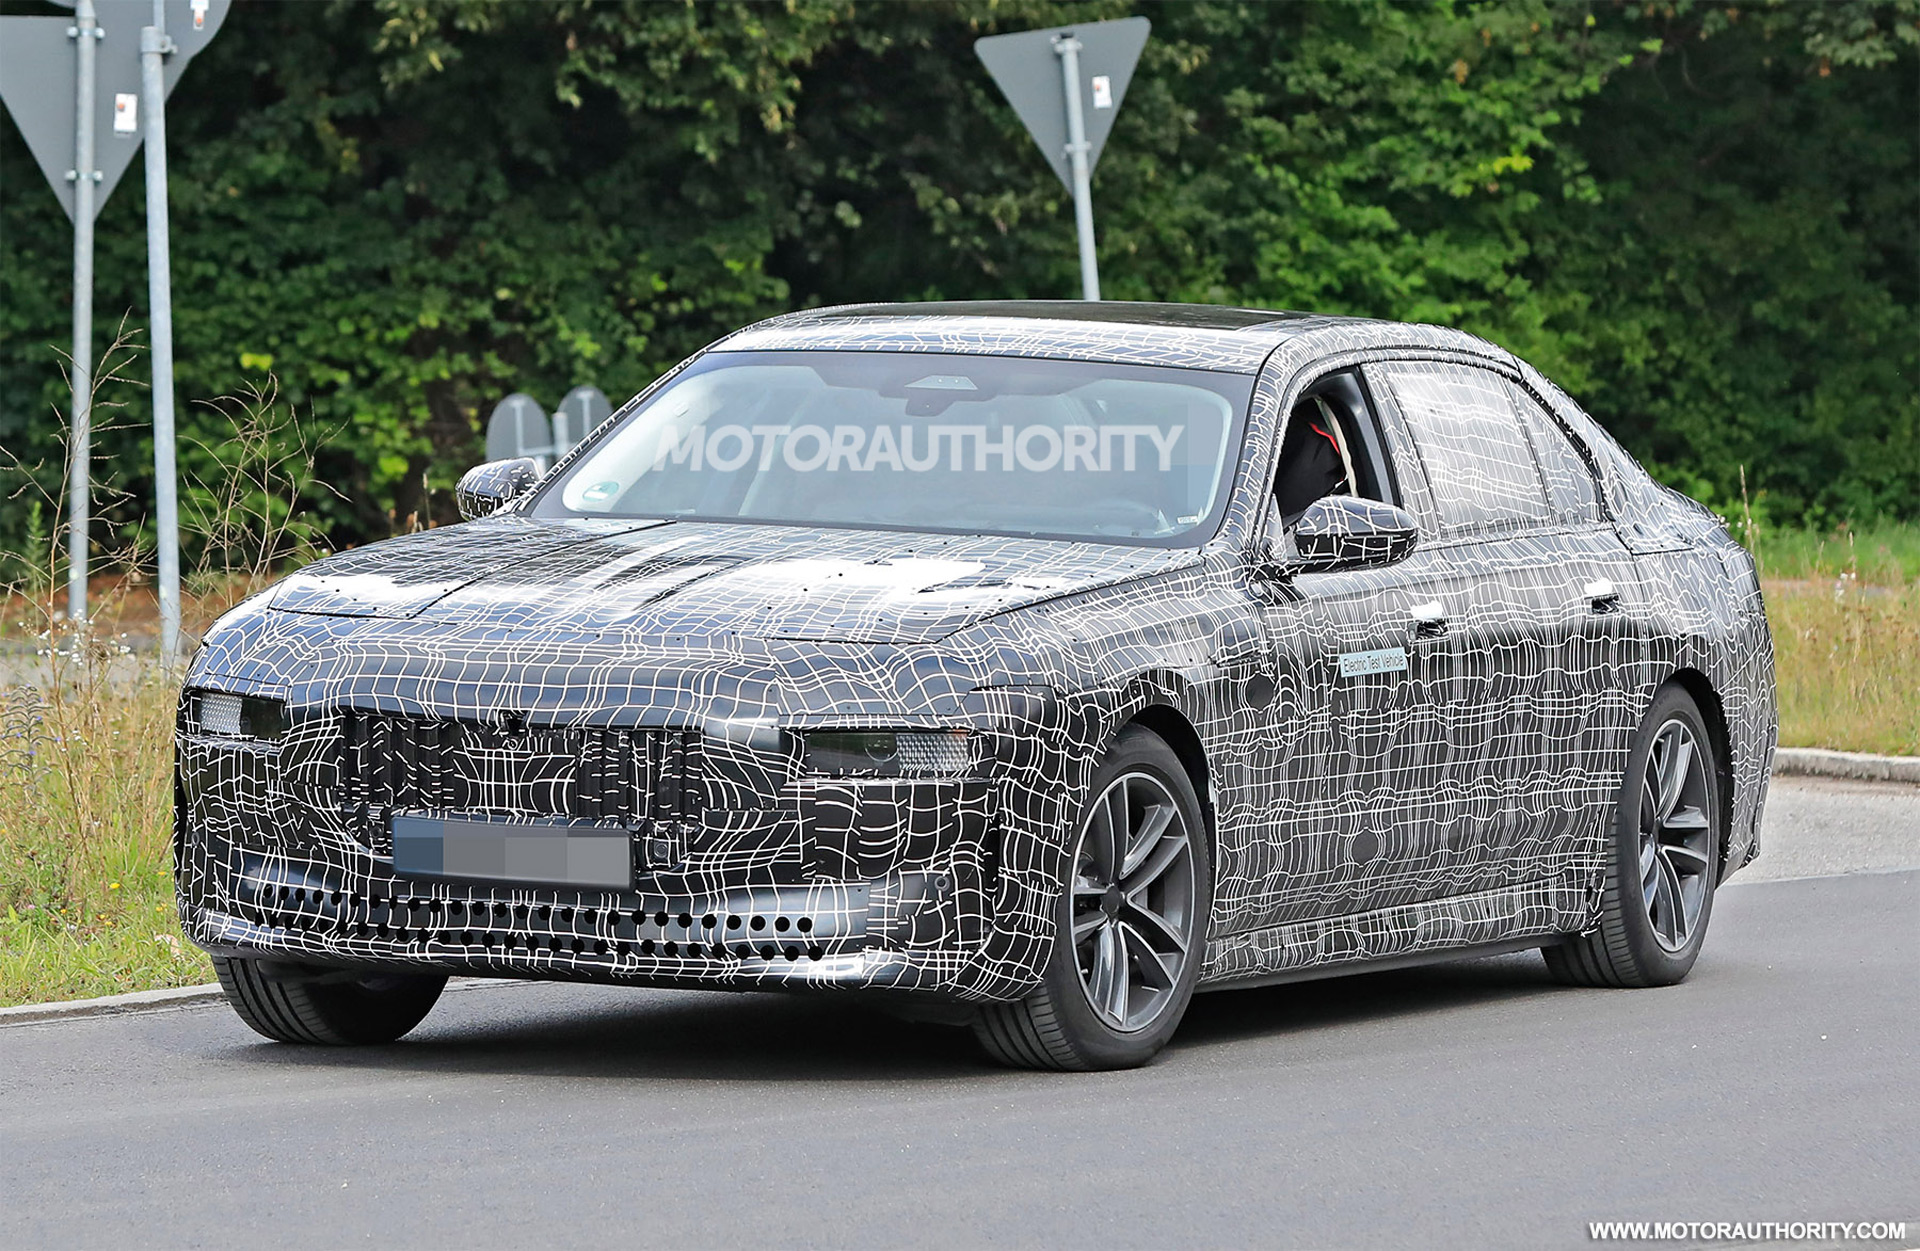 Xế khủng BMW lộ ảnh thiết kế ‘hao hao’ VinFast Lux A2.0, động cơ siêu khủng ‘chọi’ Audi, Mercedes ảnh 2